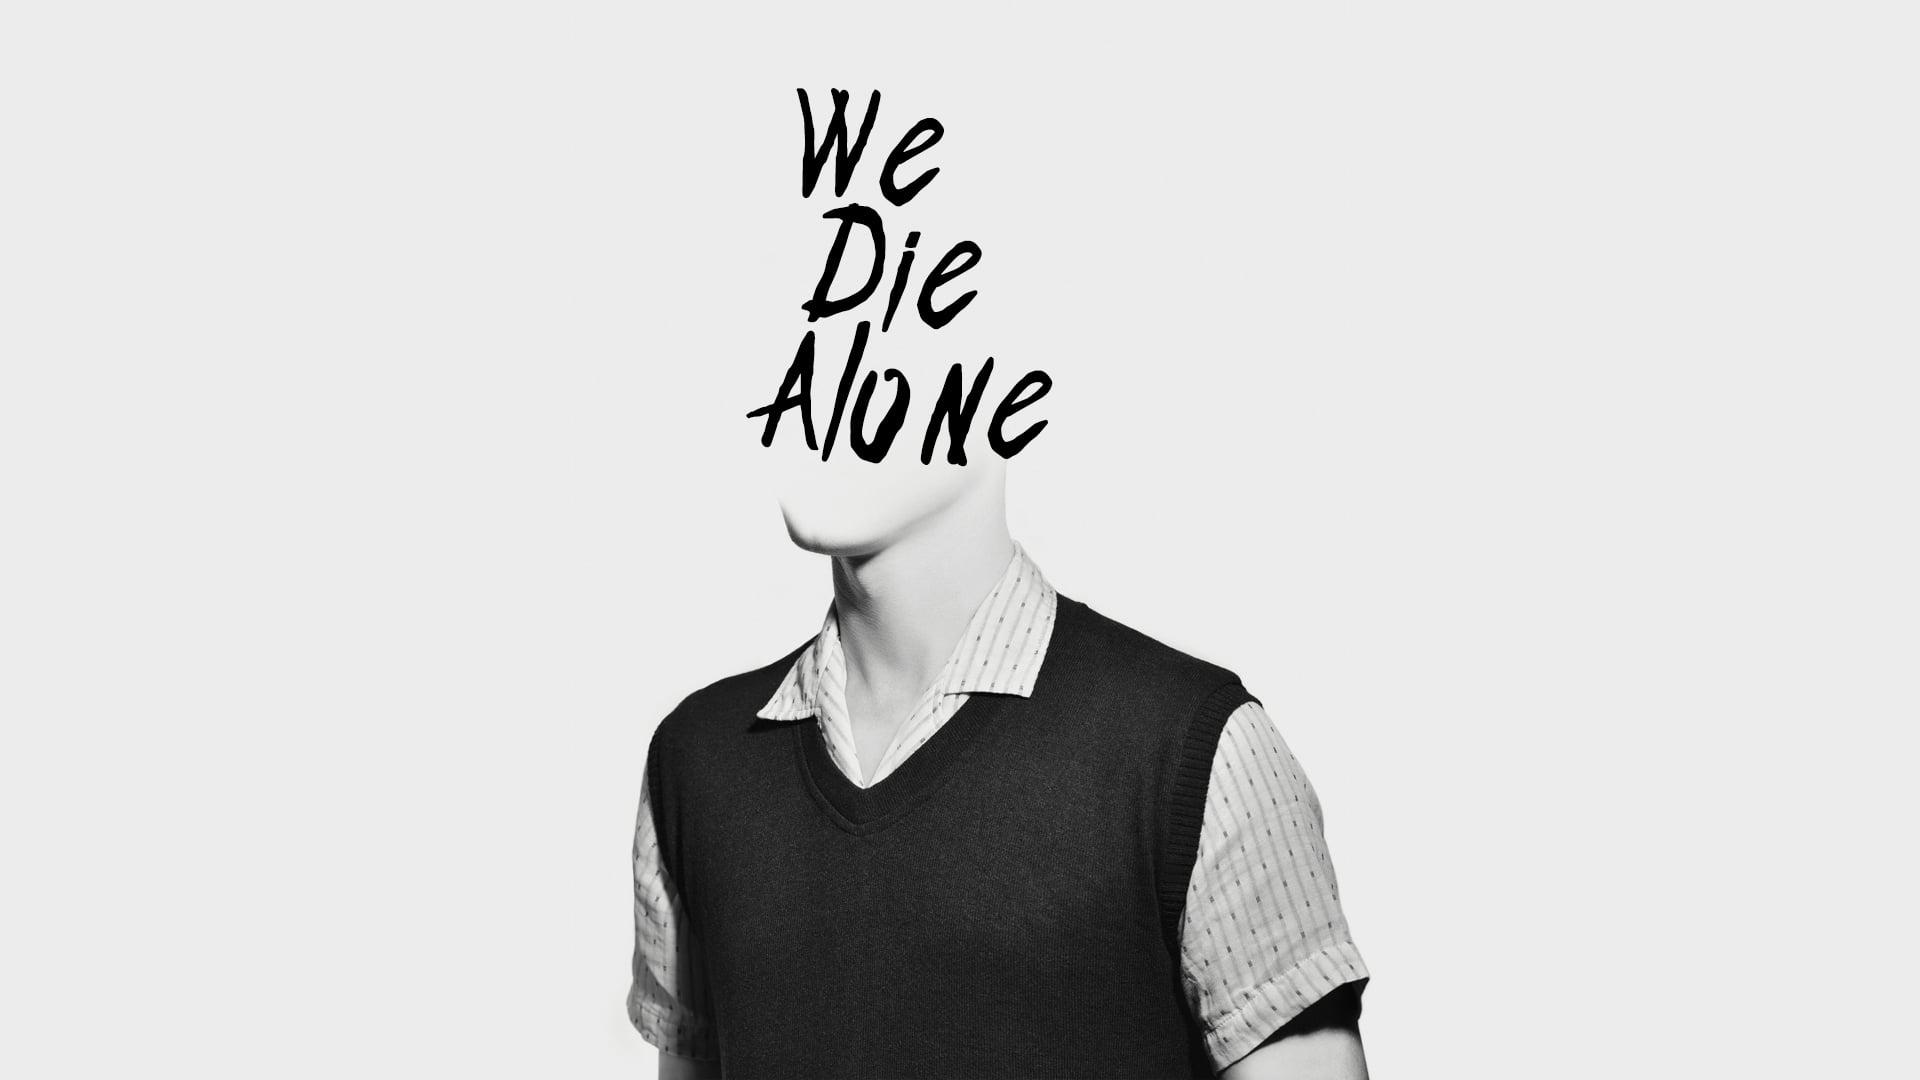 We Die Alone backdrop